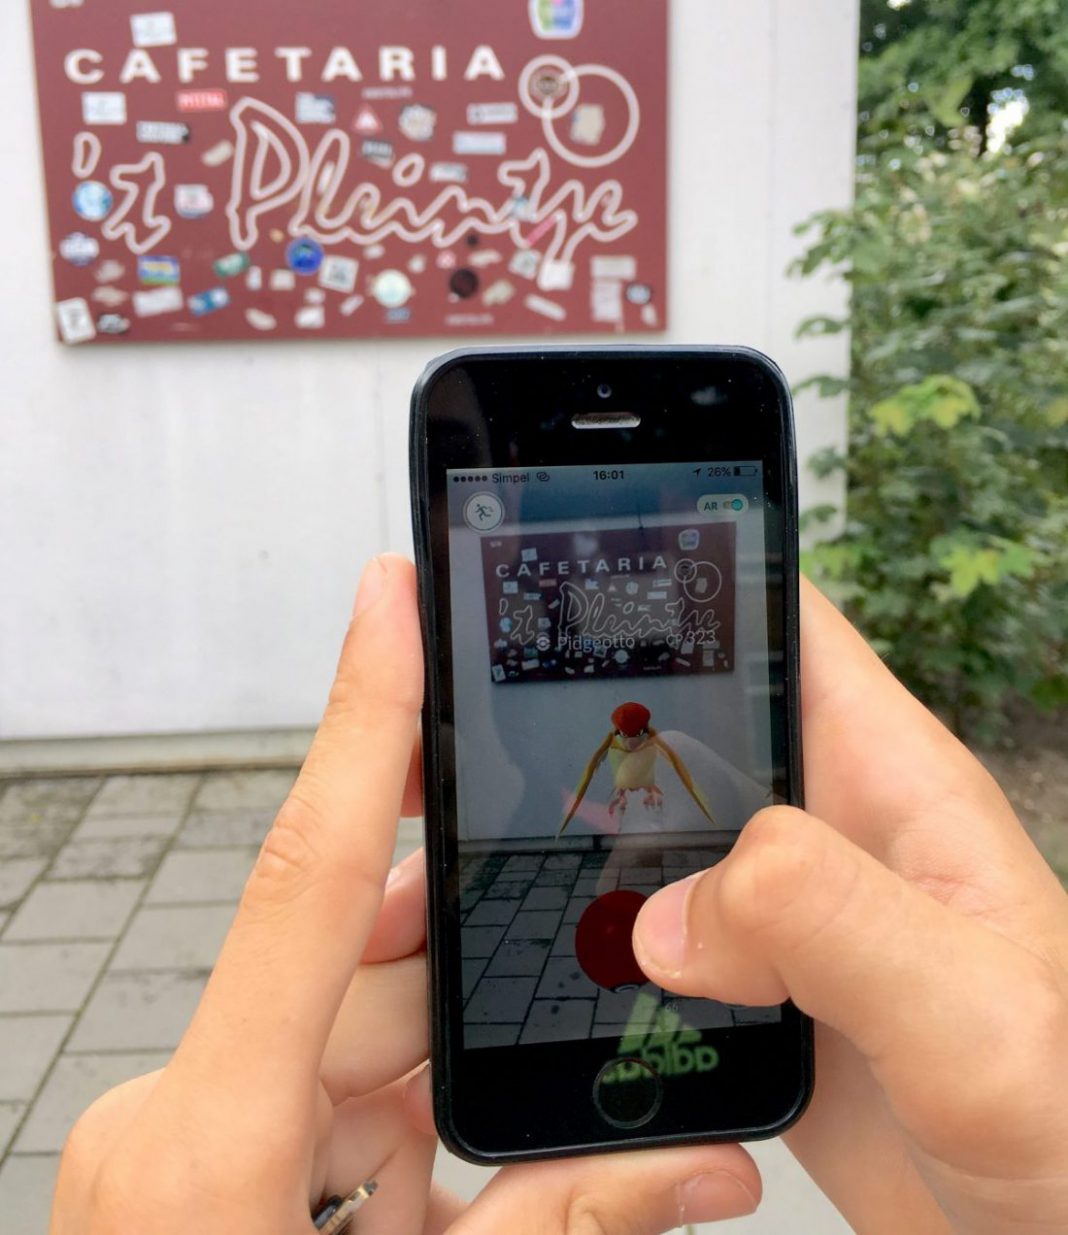 Pokémon Go bij de meest gefotografeerde cafetaria in Nederland